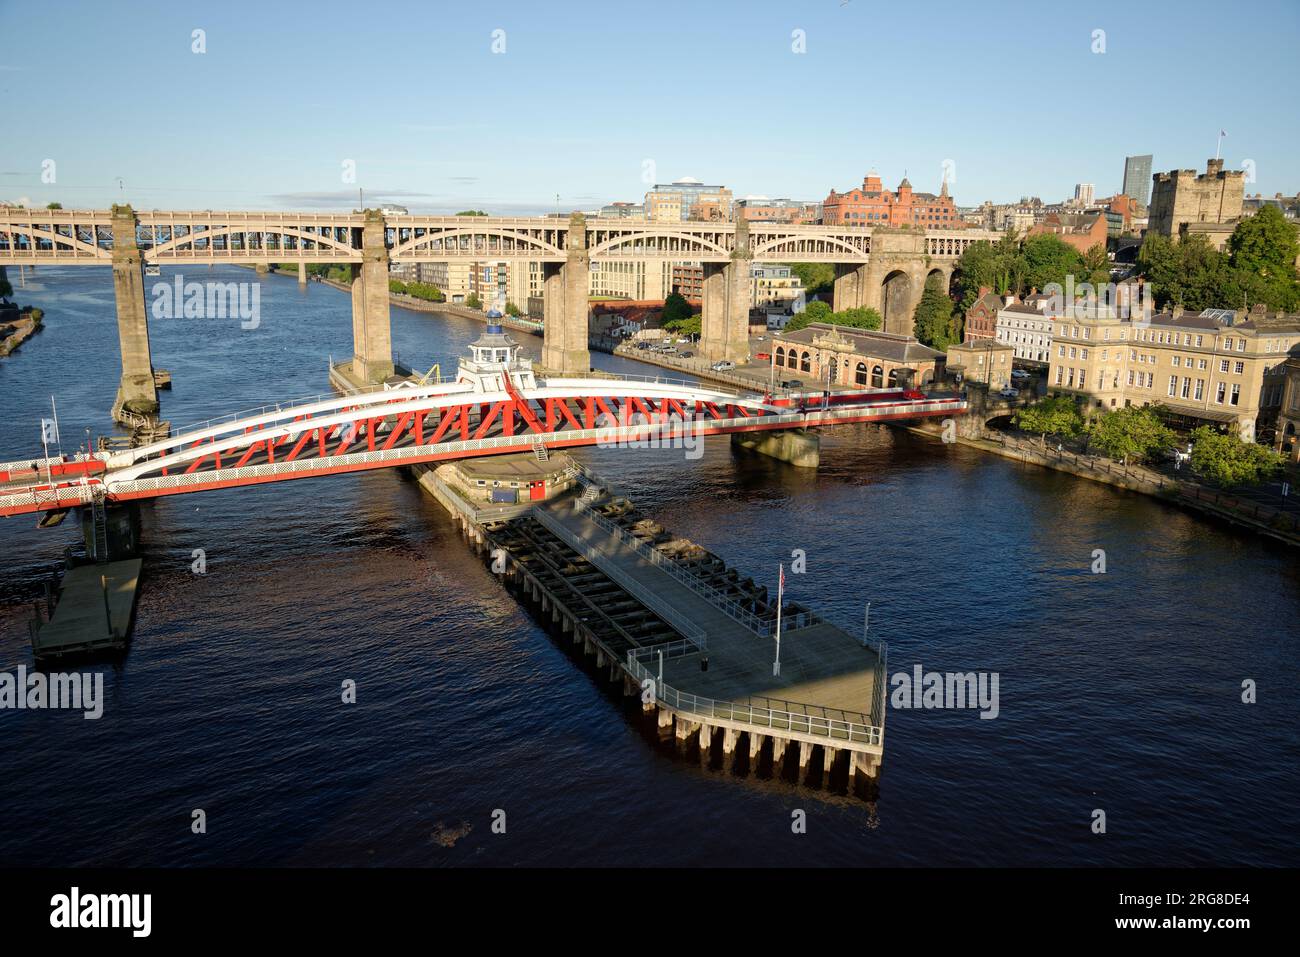 Le pont tournant à Newcastle. Pont routier en métal peint en rouge et blanc sur la rivière Tyne. Le pont de High Level derrière. Banque D'Images